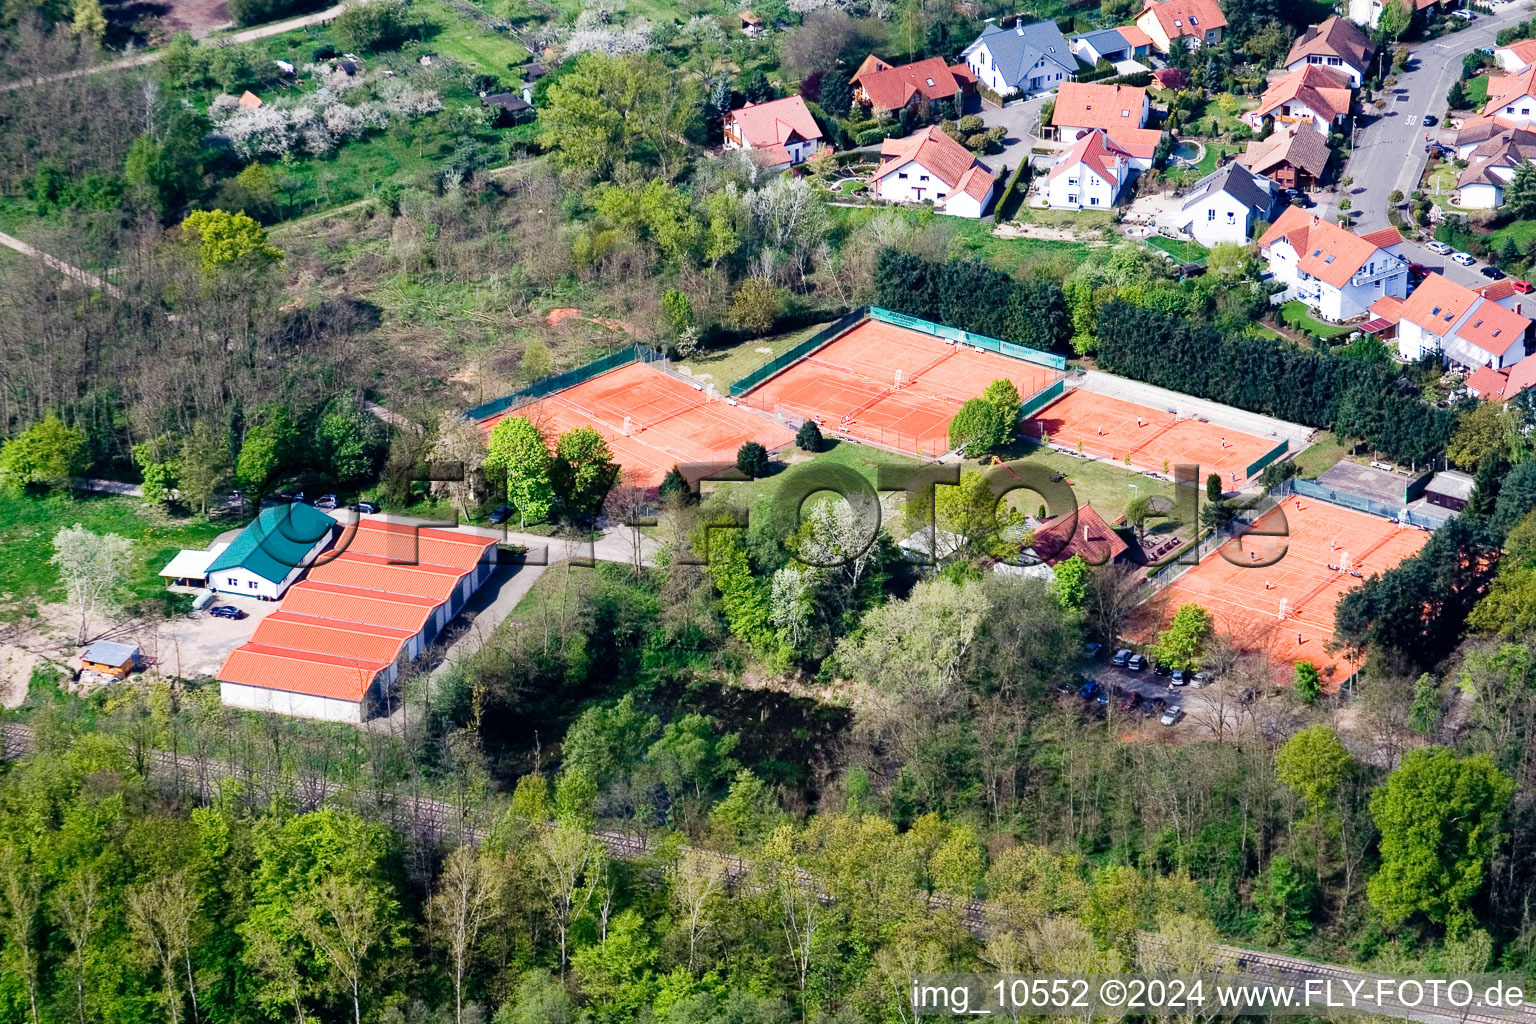 Club de tennis à Jockgrim dans le département Rhénanie-Palatinat, Allemagne depuis l'avion